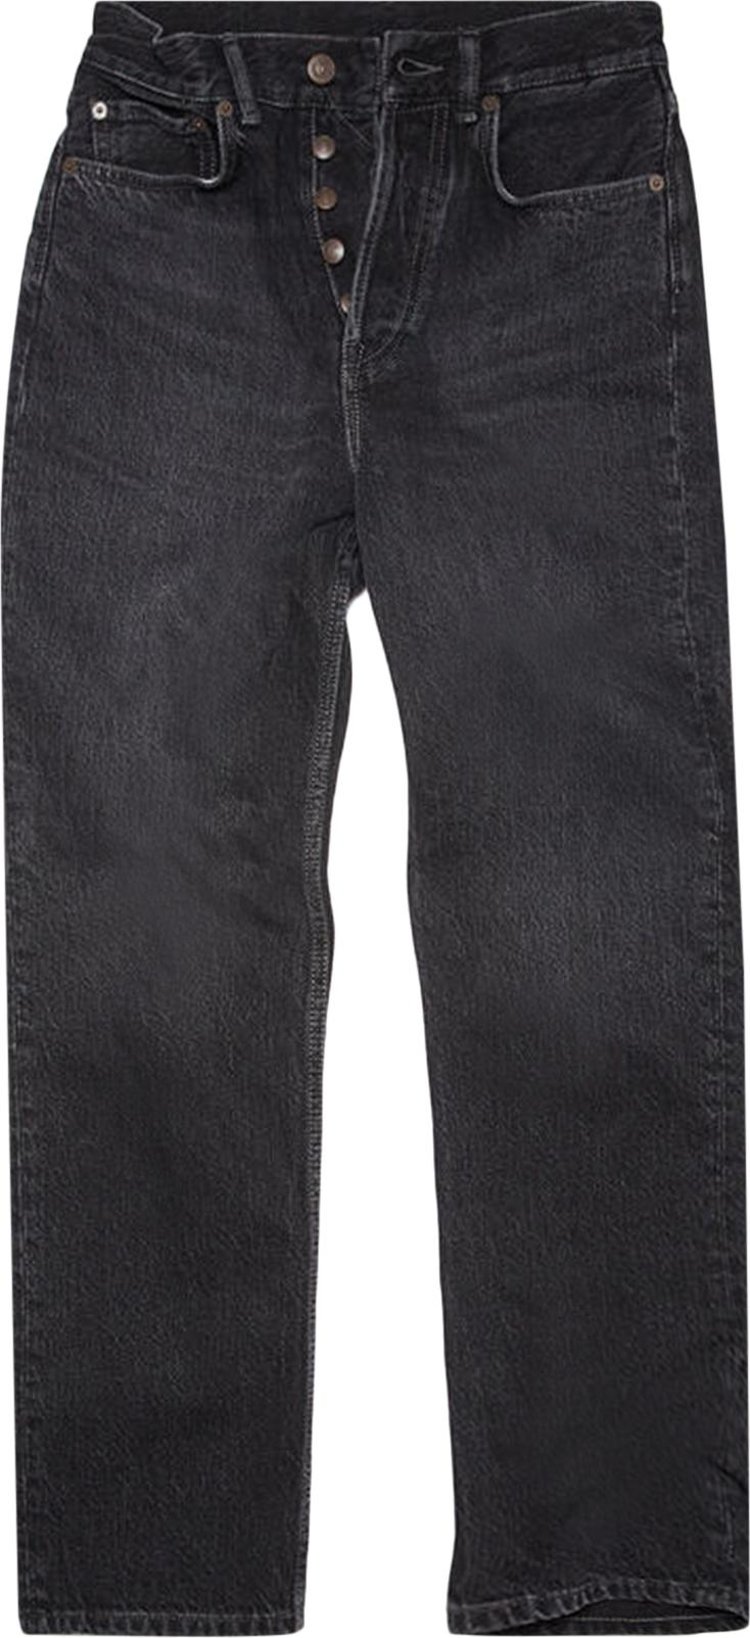 Джинсы Acne Studios Mece Regular Fit Jeans 'Black', черный джинсы acne studios classic fit jeans black черный